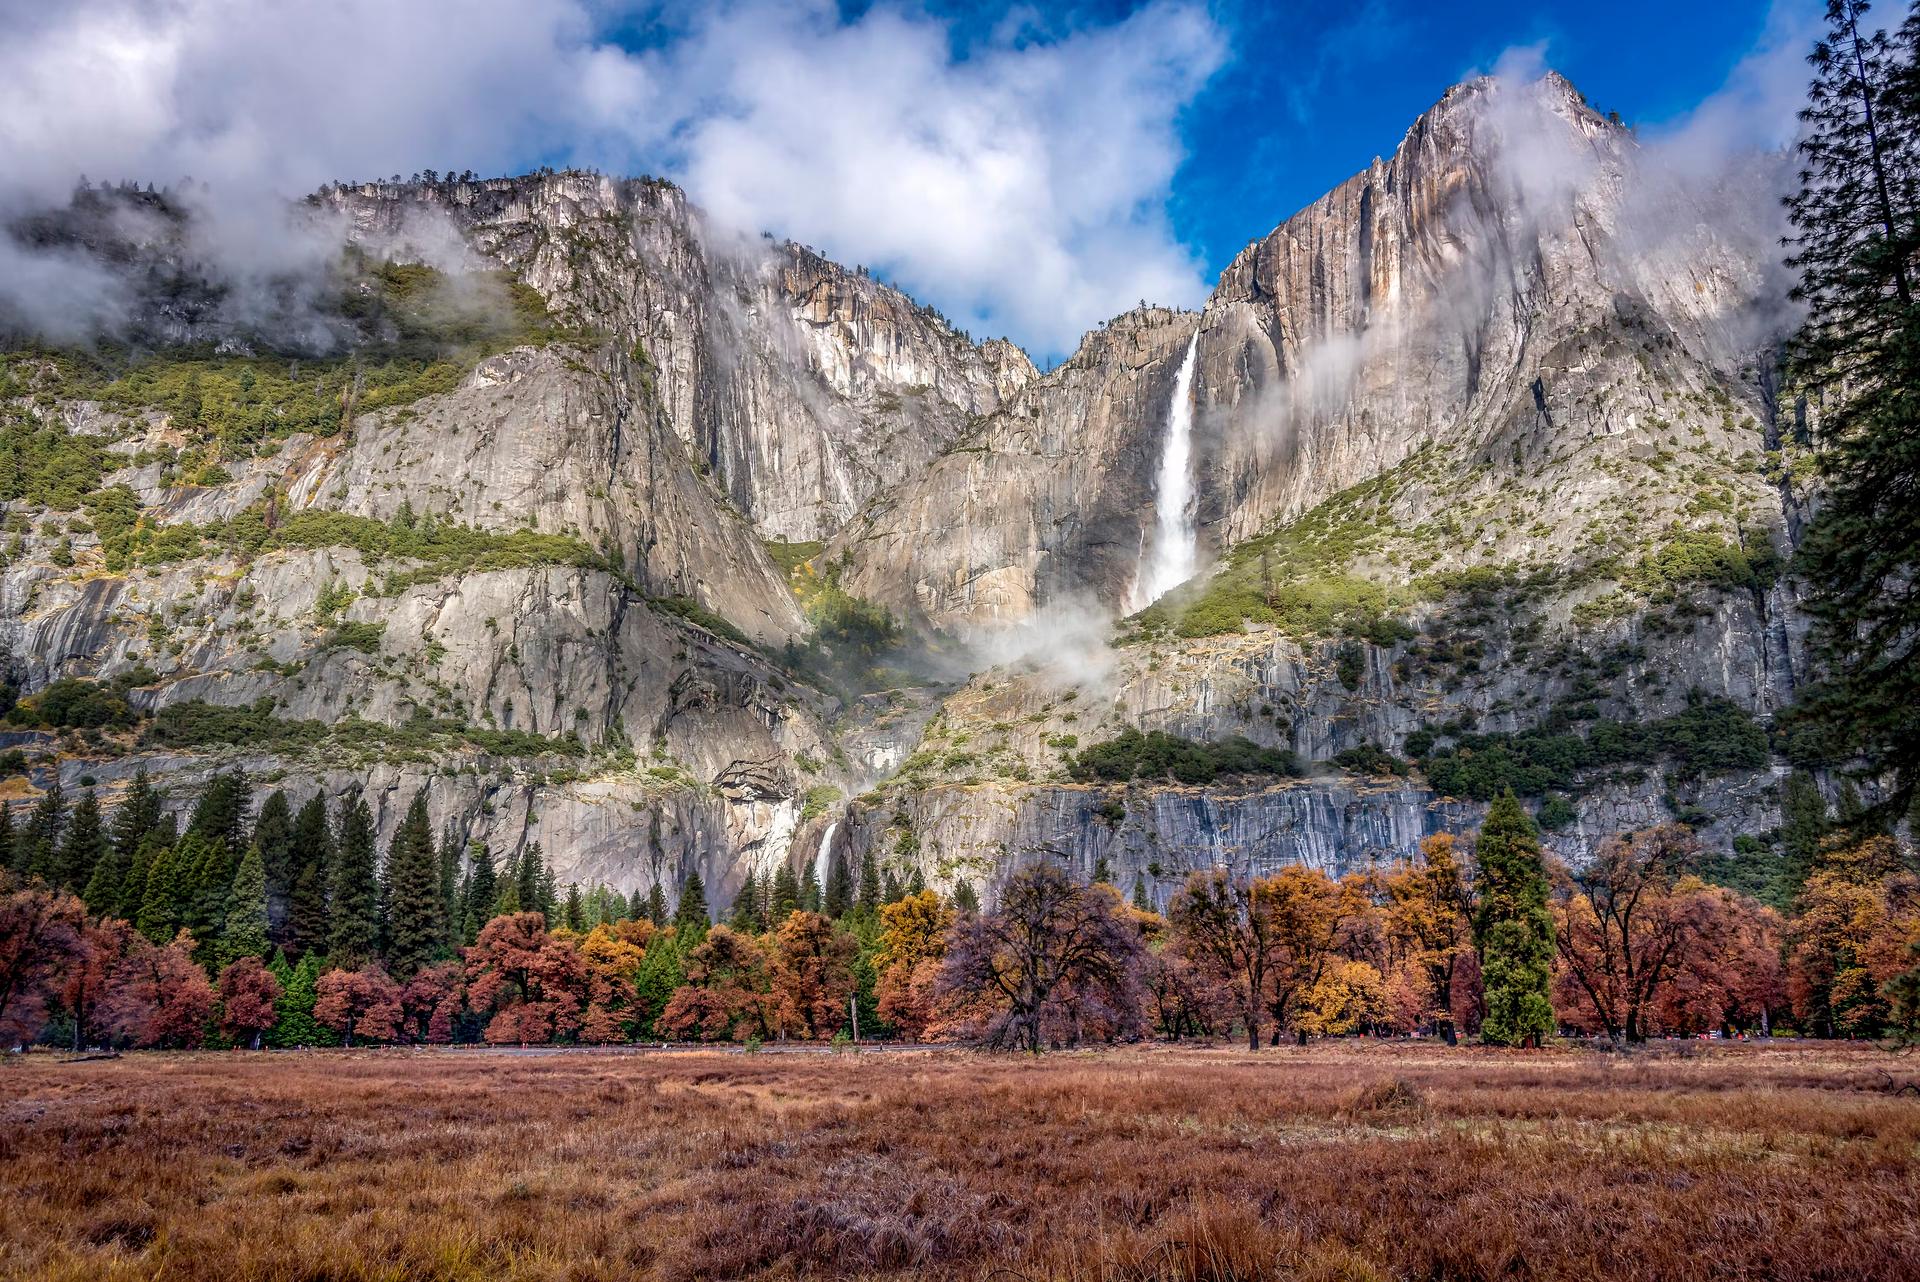 Yosemite Falls at Yosemite National Park, California